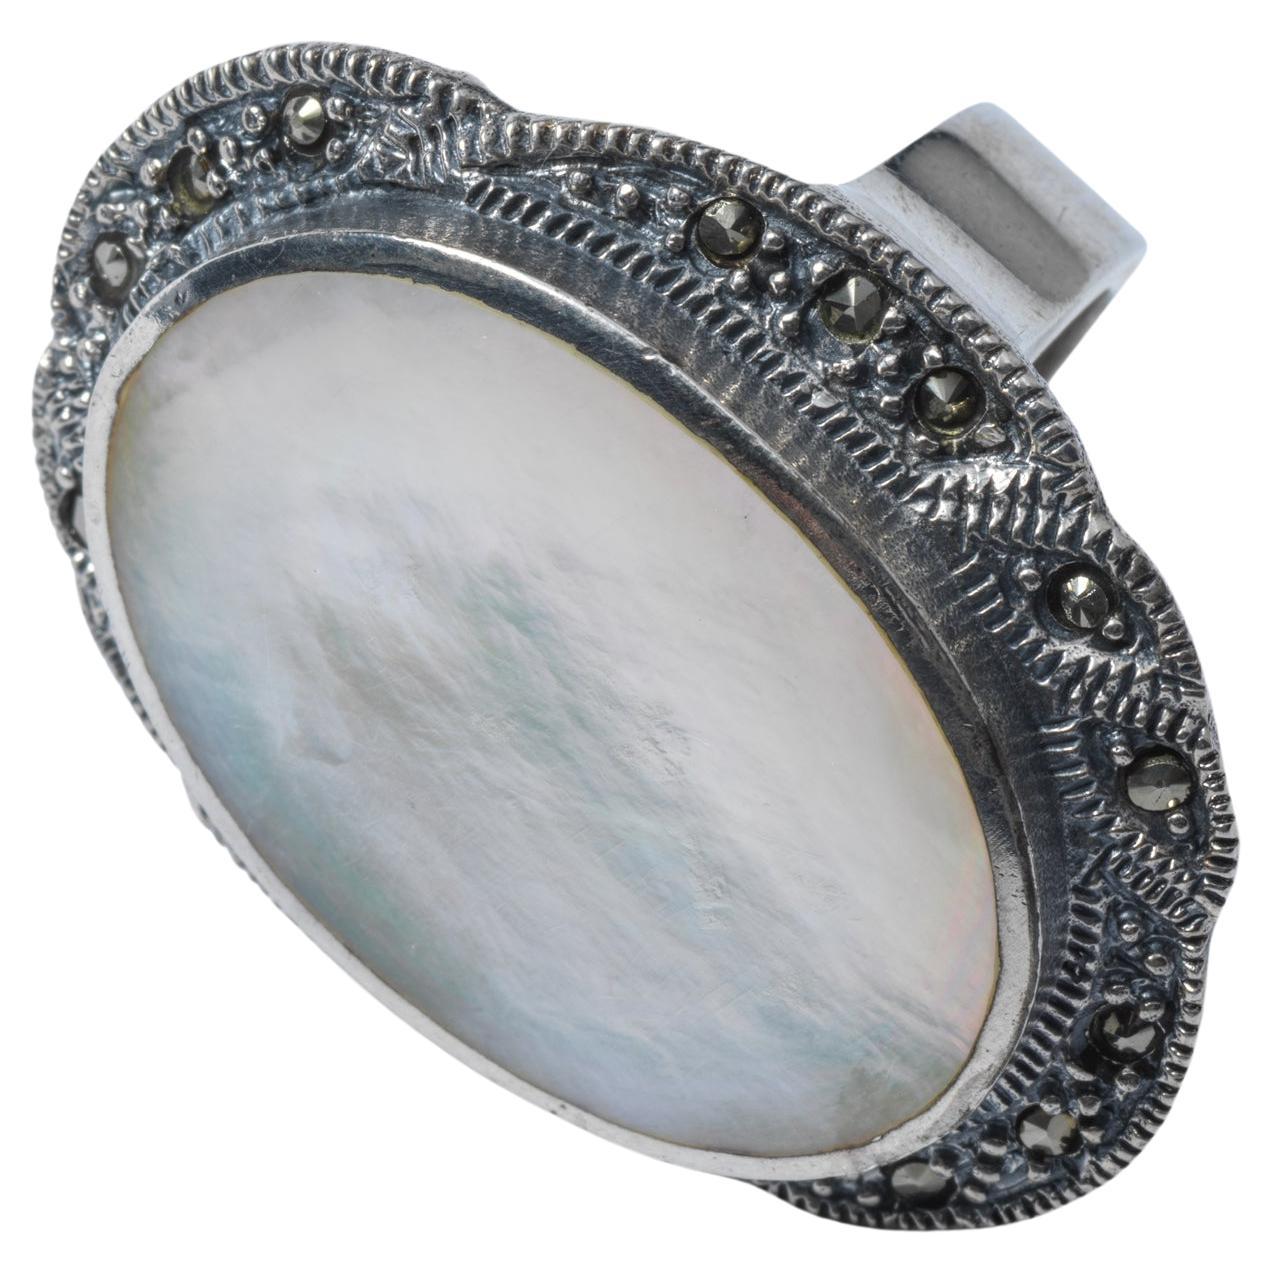 Ein großer, schöner Ring, der eine Aussage macht, das ist er. Das große, ovale Perlmutt ist in Silber mit kleinen Pyriten gefasst. Es wurde in der ersten Hälfte des 20. Jahrhunderts in Nordeuropa hergestellt. Wenn sie von einer älteren Person